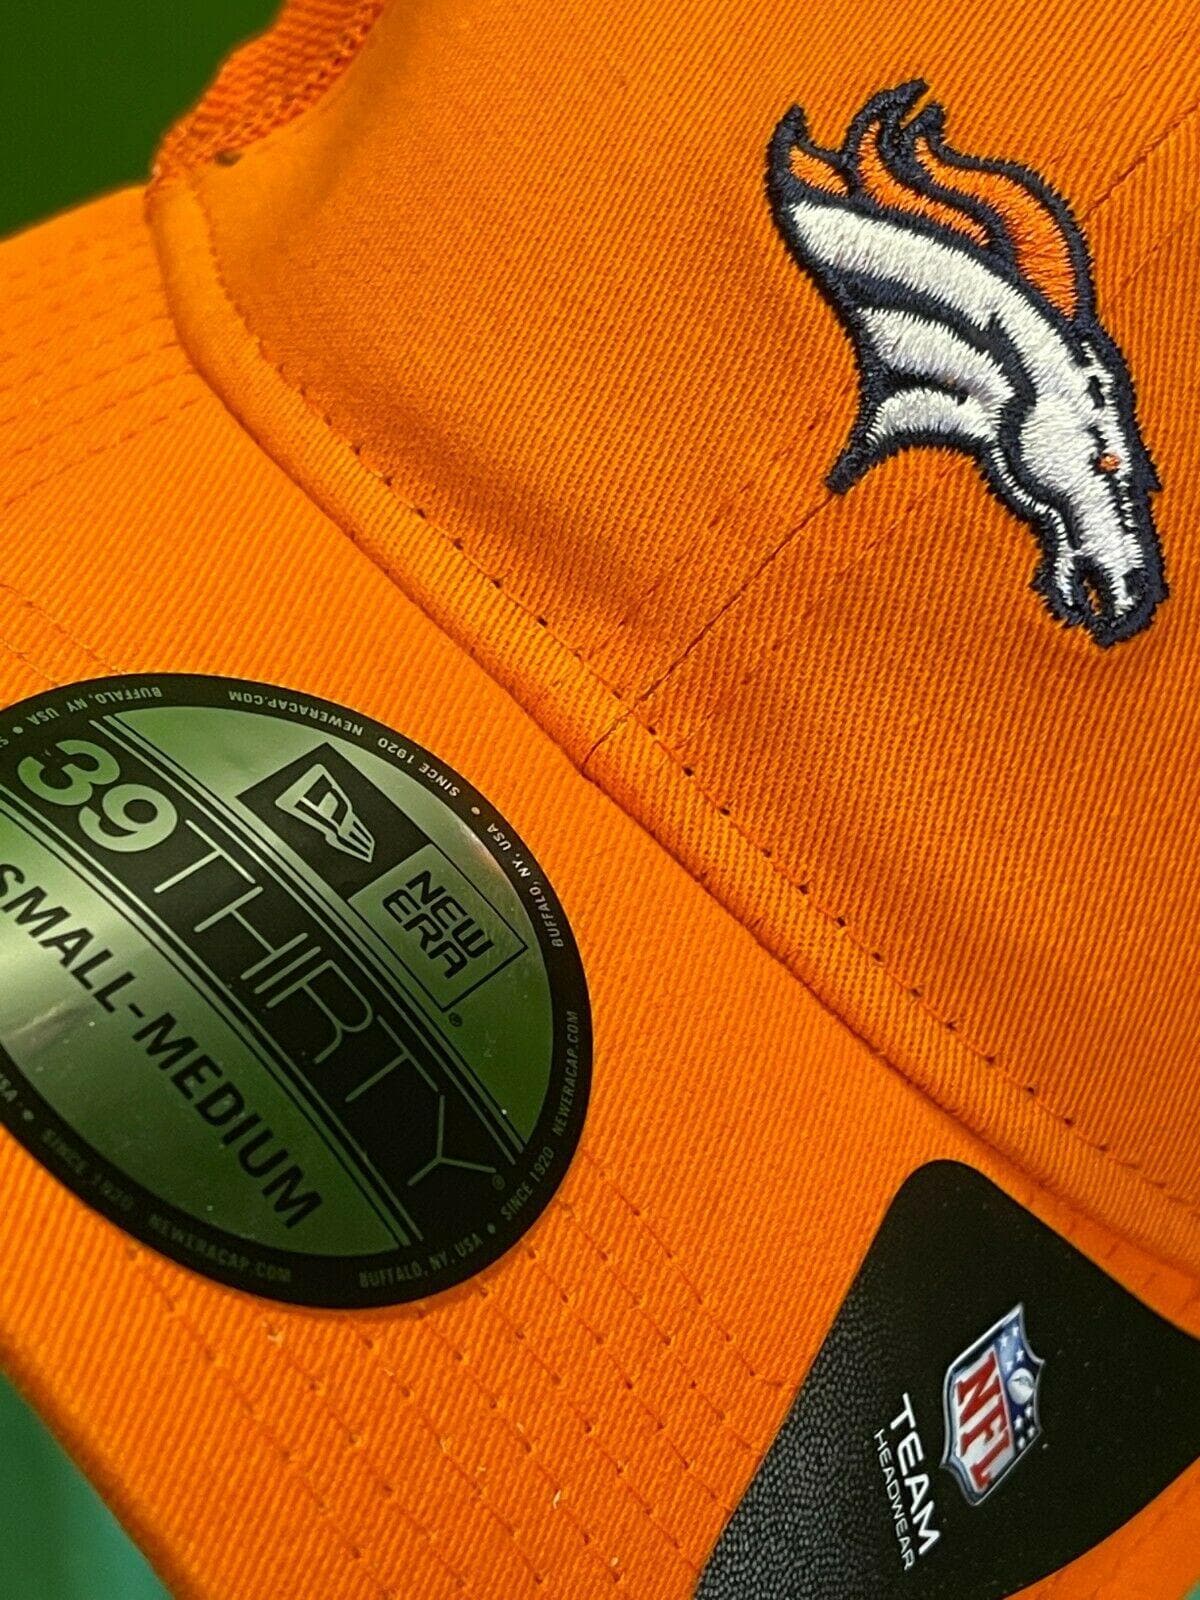 NFL Denver Broncos New Era 39THIRTY Team Precision Cap Hat S-M NWT